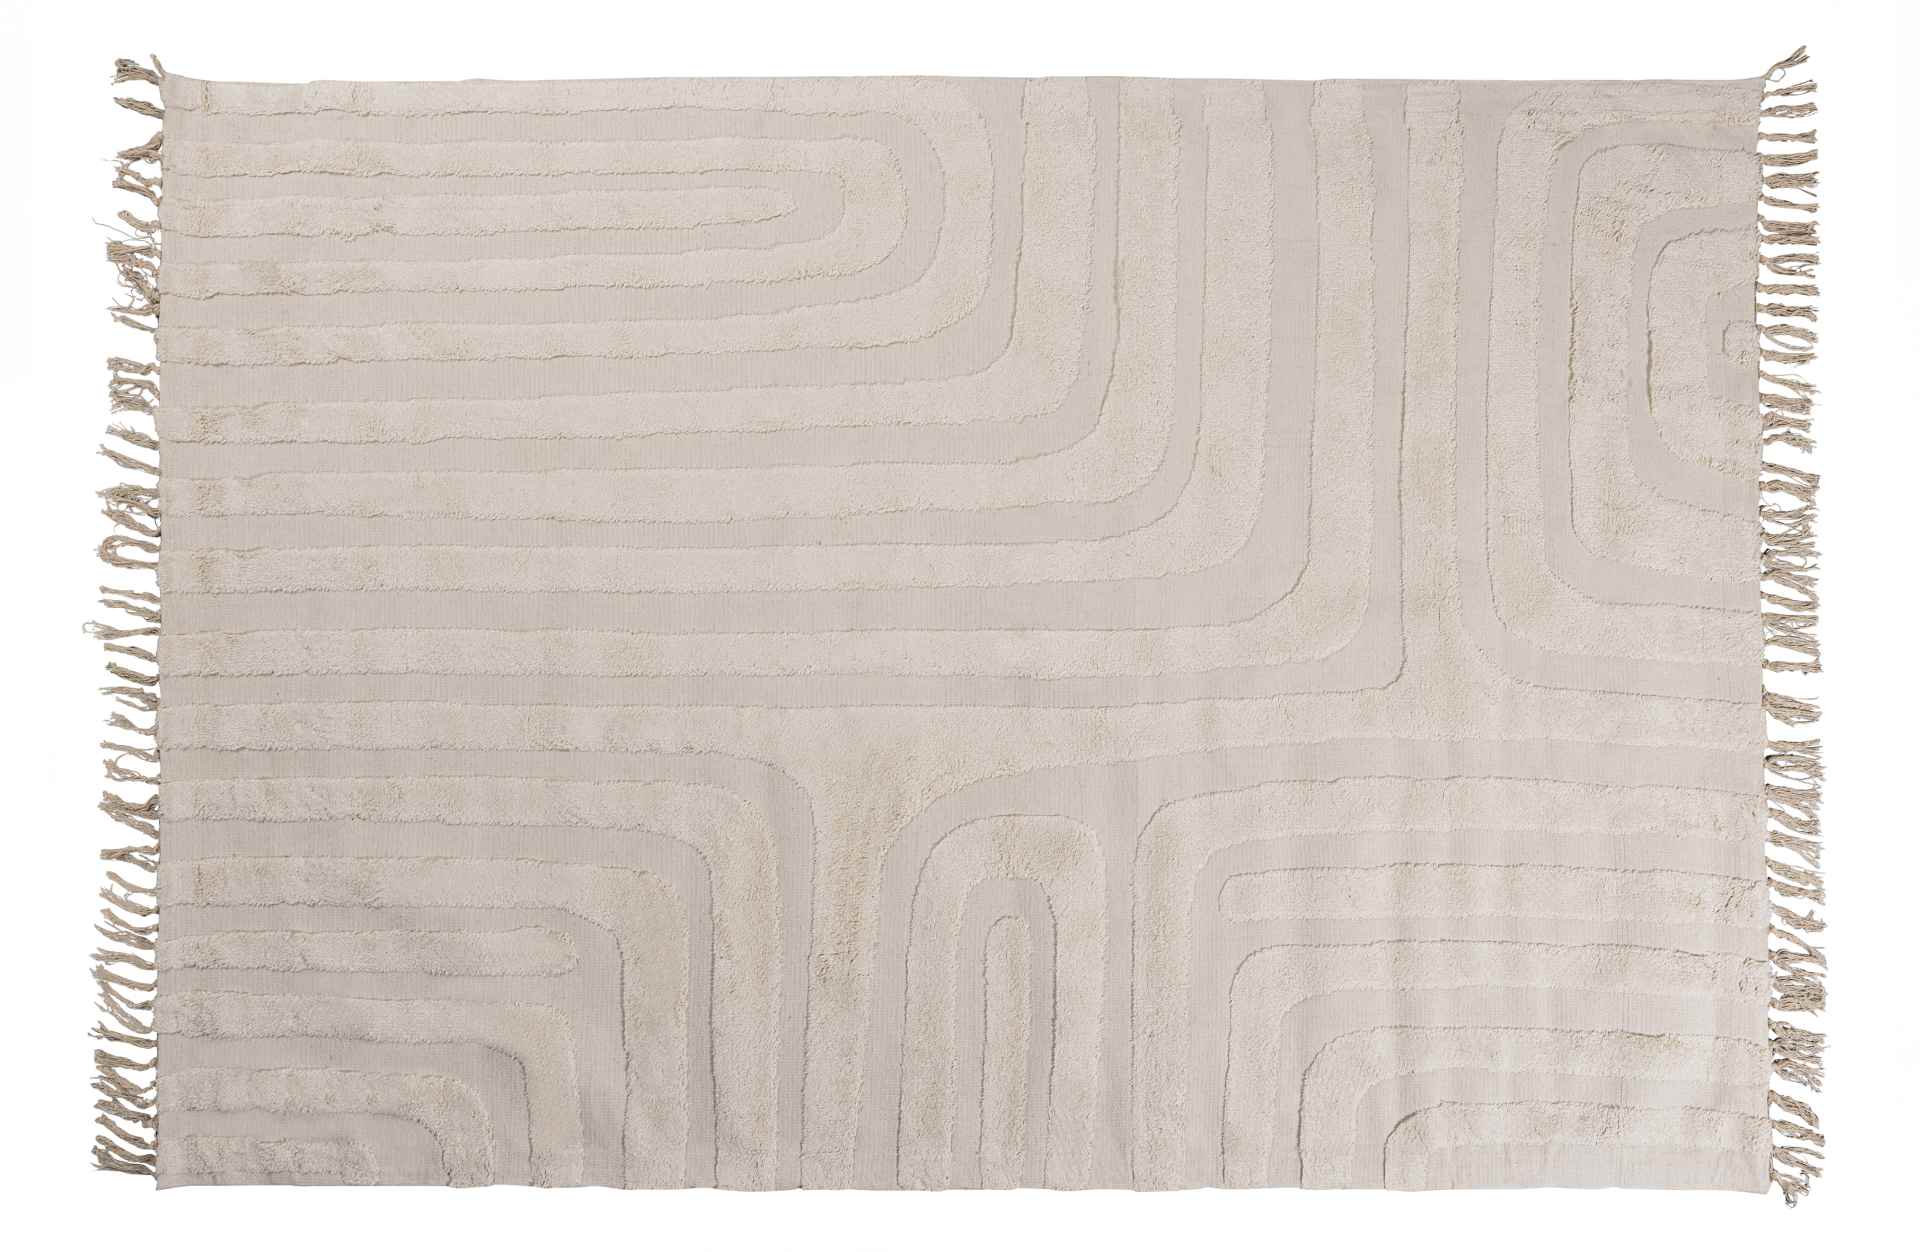 Der Teppich Zita überzeugt mit seinem modernen Design. Gefertigt wurde er aus einem Kombinationsgewebe aus Polyester und Baumwolle, welche einen Beige Farbton besitzt. Der Teppich besitzt eine Größe von 170x240 cm.